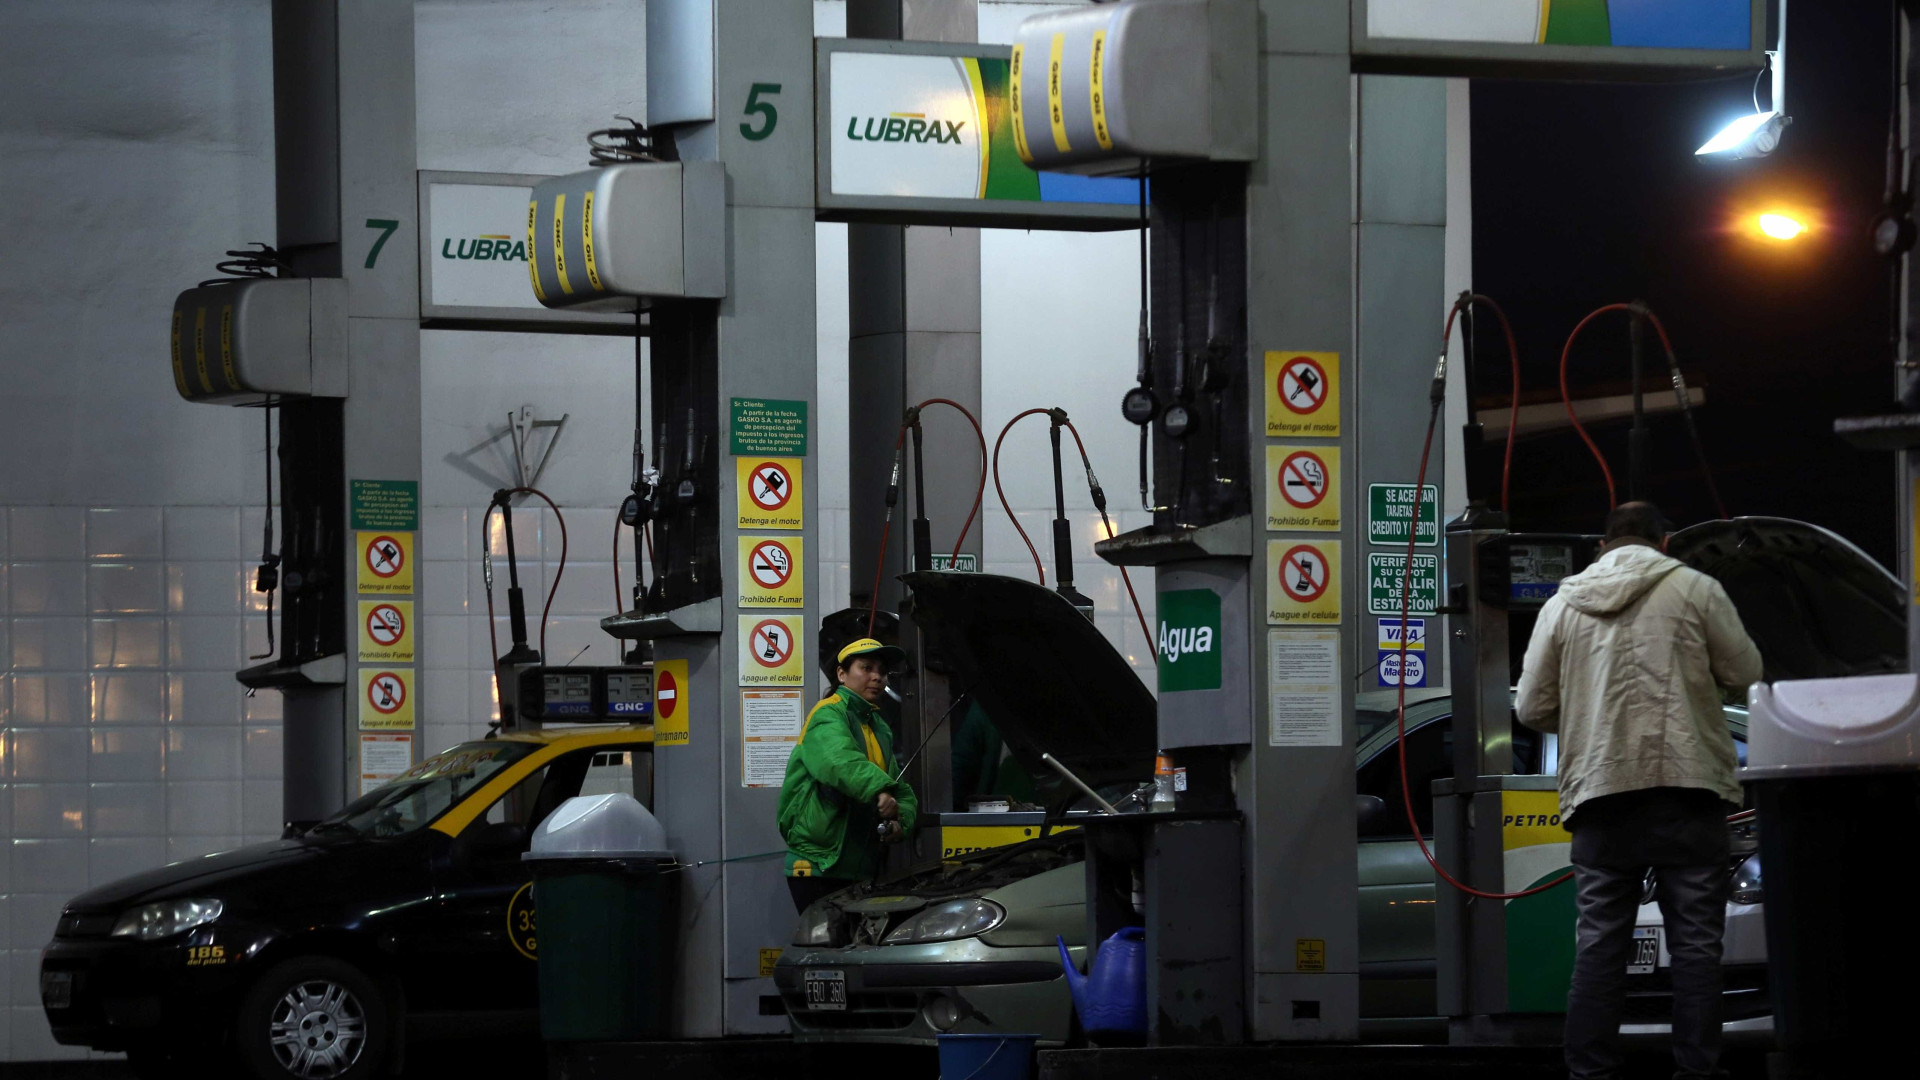 Gasolina da Petrobras atinge maior valor desde início dos reajustes